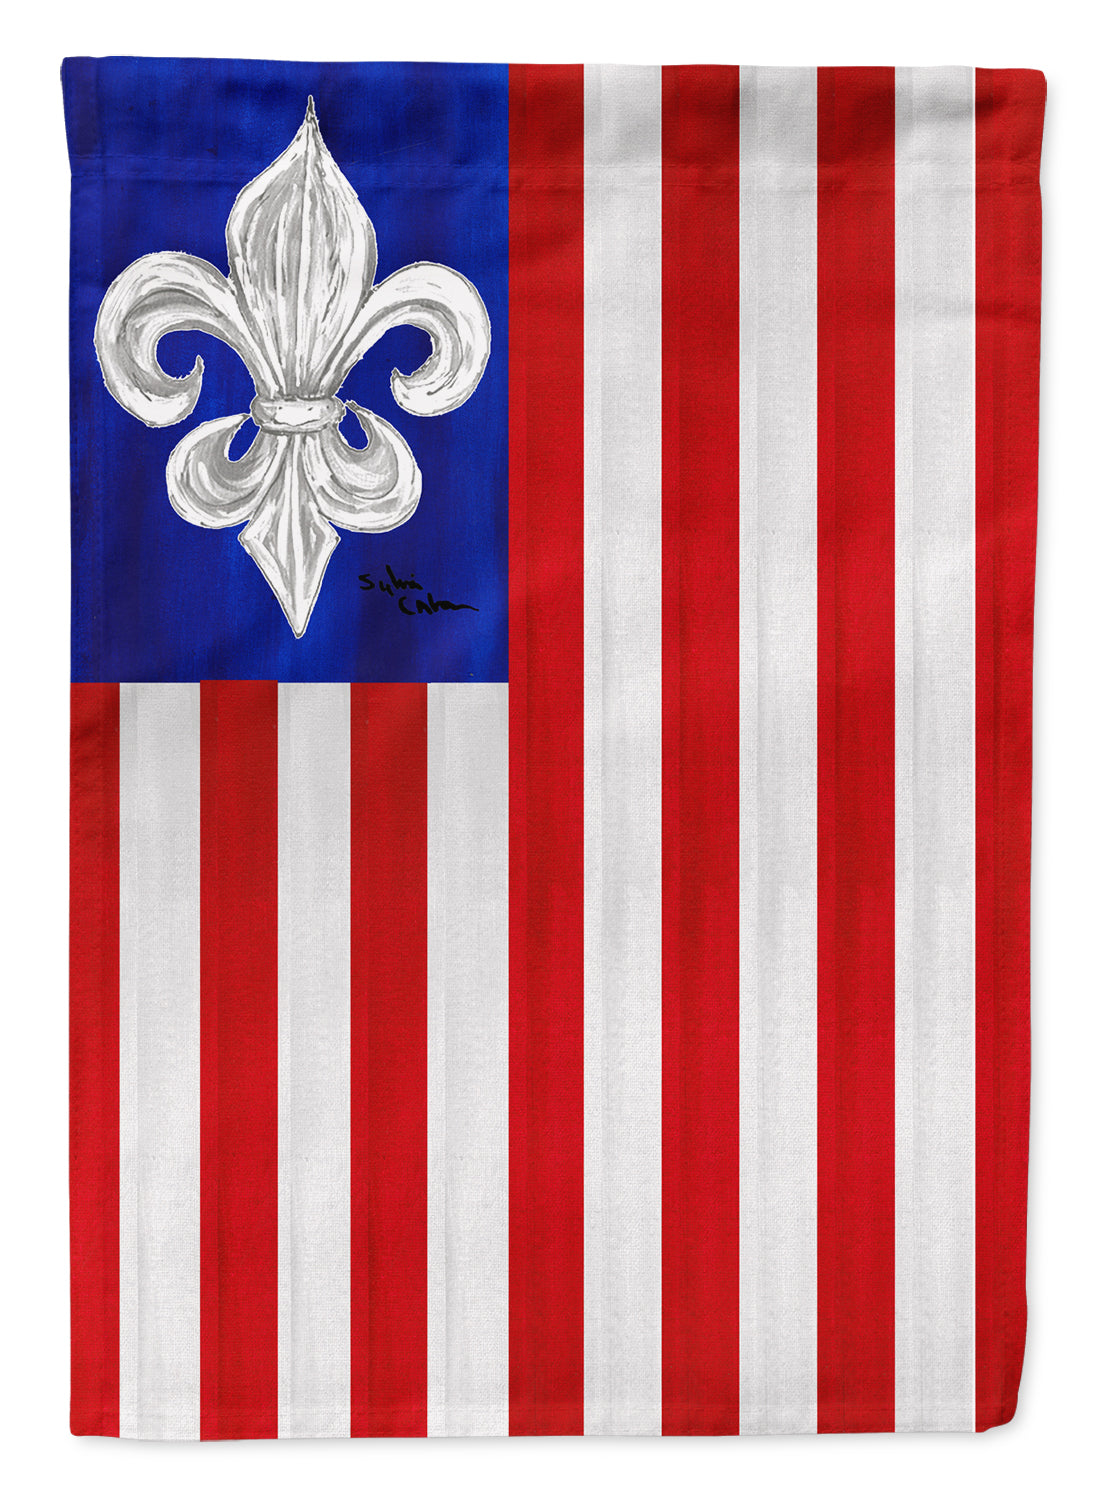 USA Fleur de lis Patriotic American Flag Canvas House Size